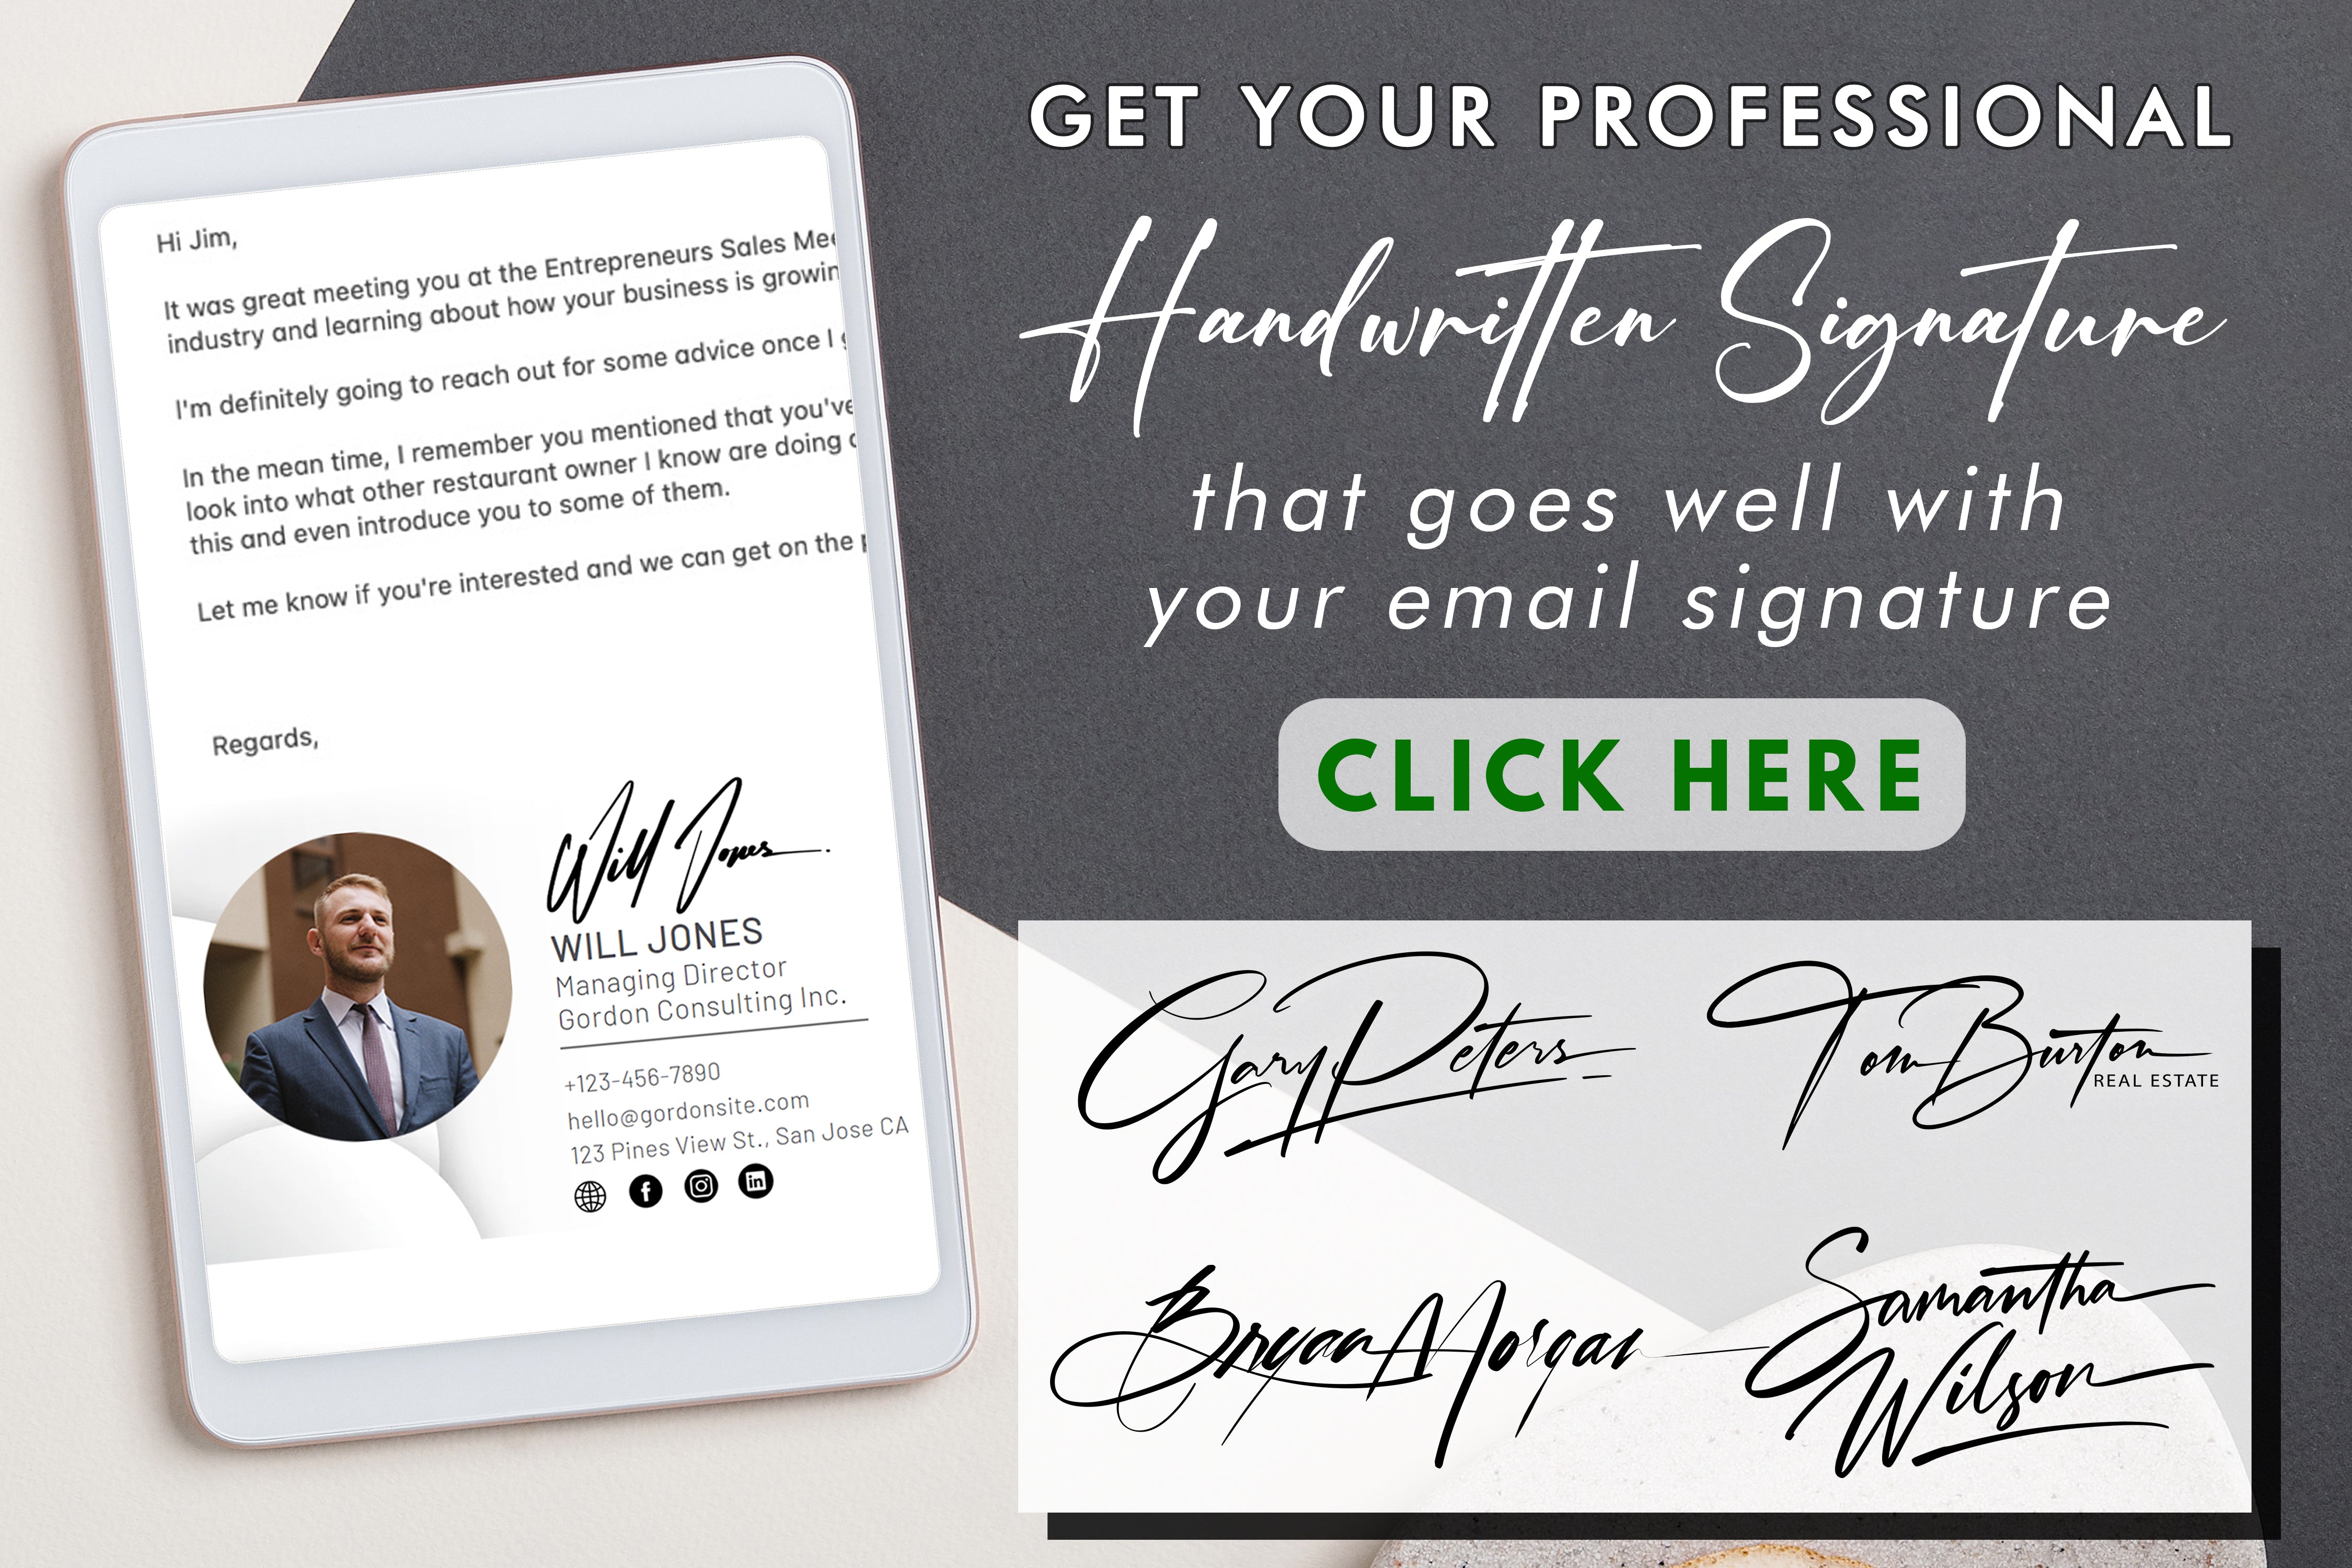 Saiba como aproveitar ao máximo seu bloco de assinaturas e elevar sua experiência de assinatura de documentos com eficiência e um toque pessoal.